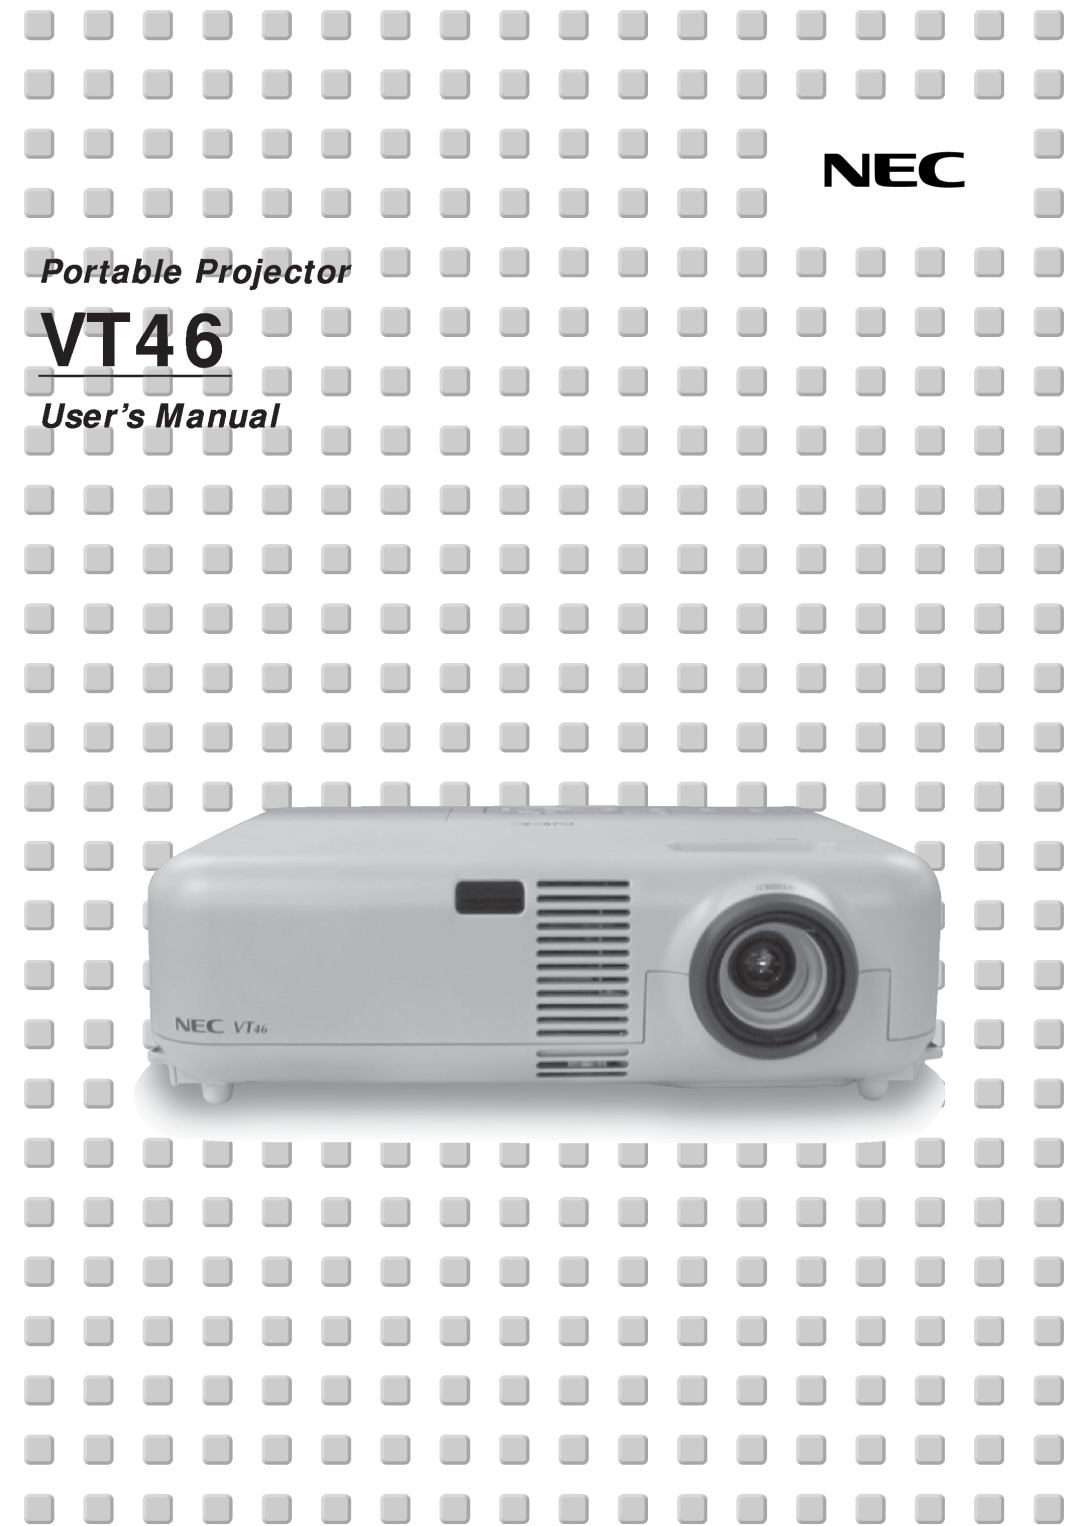 NEC VT46 user manual Portable Projector, User’s Manual 